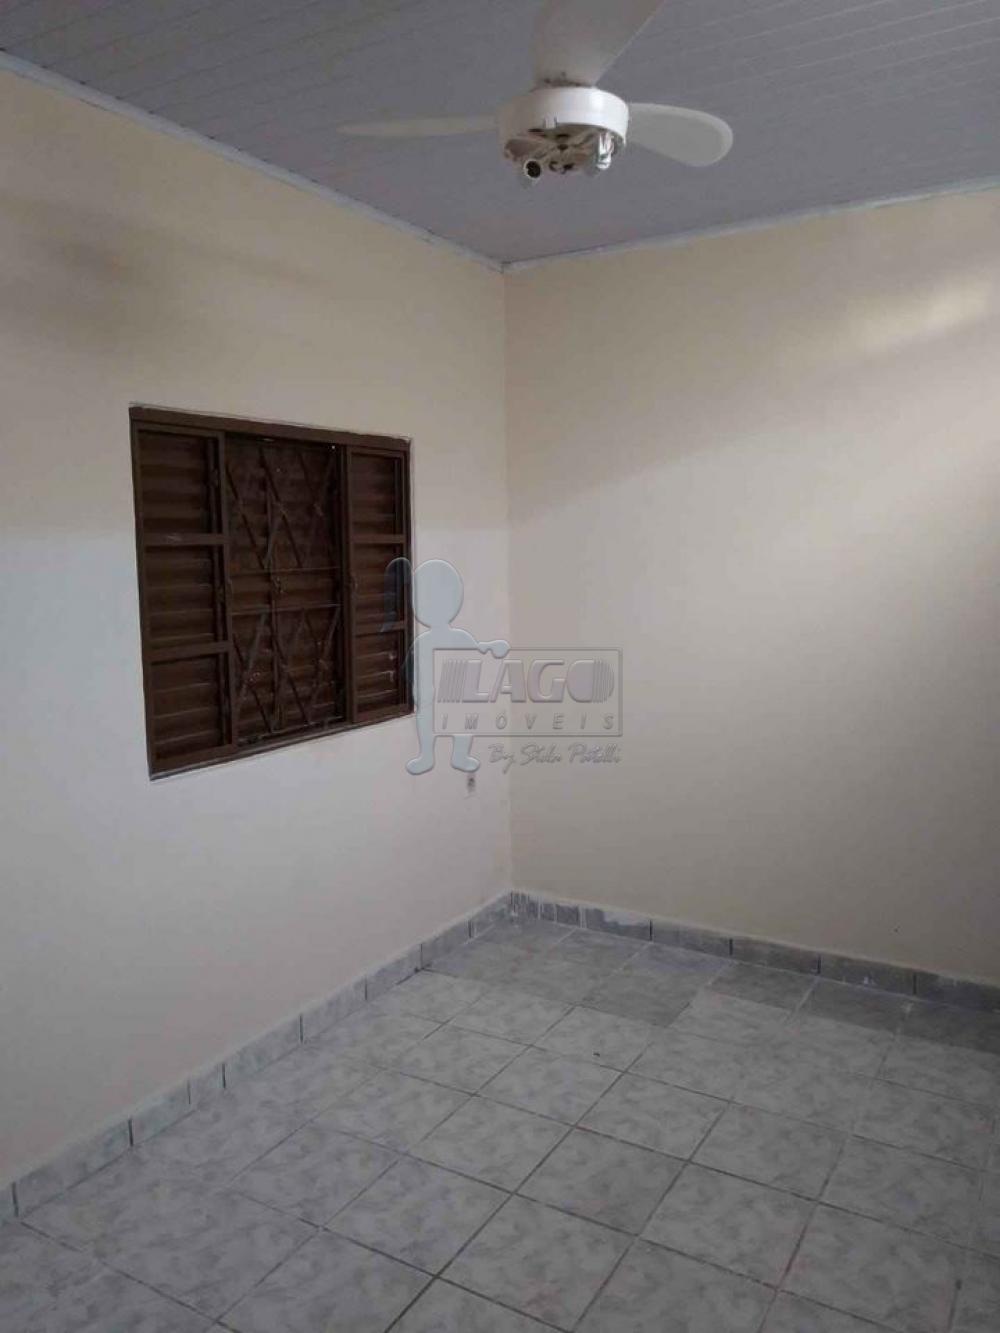 Alugar Casas / Padrão em Ribeirão Preto R$ 950,00 - Foto 2